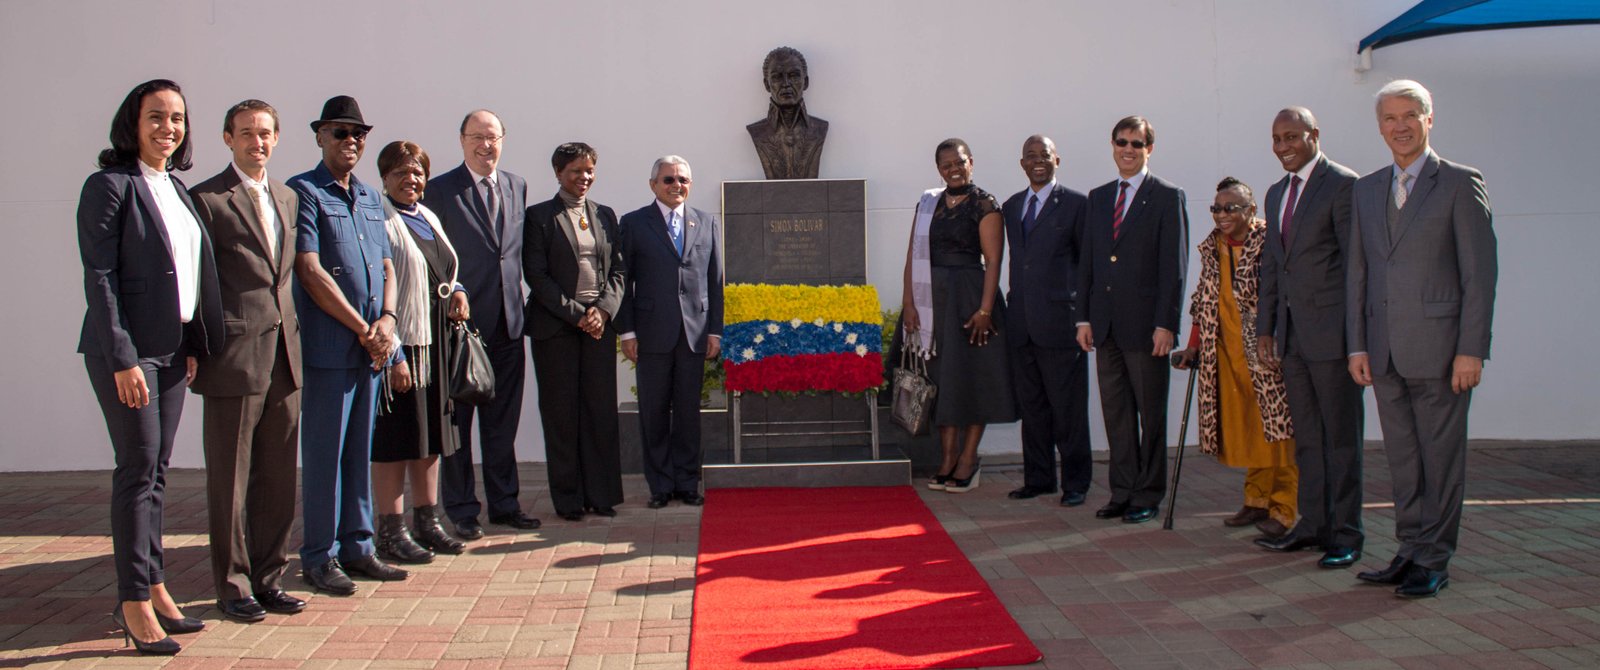 Celebración del 205 aniversario de la independencia de Venezuela en Namibia 2 1